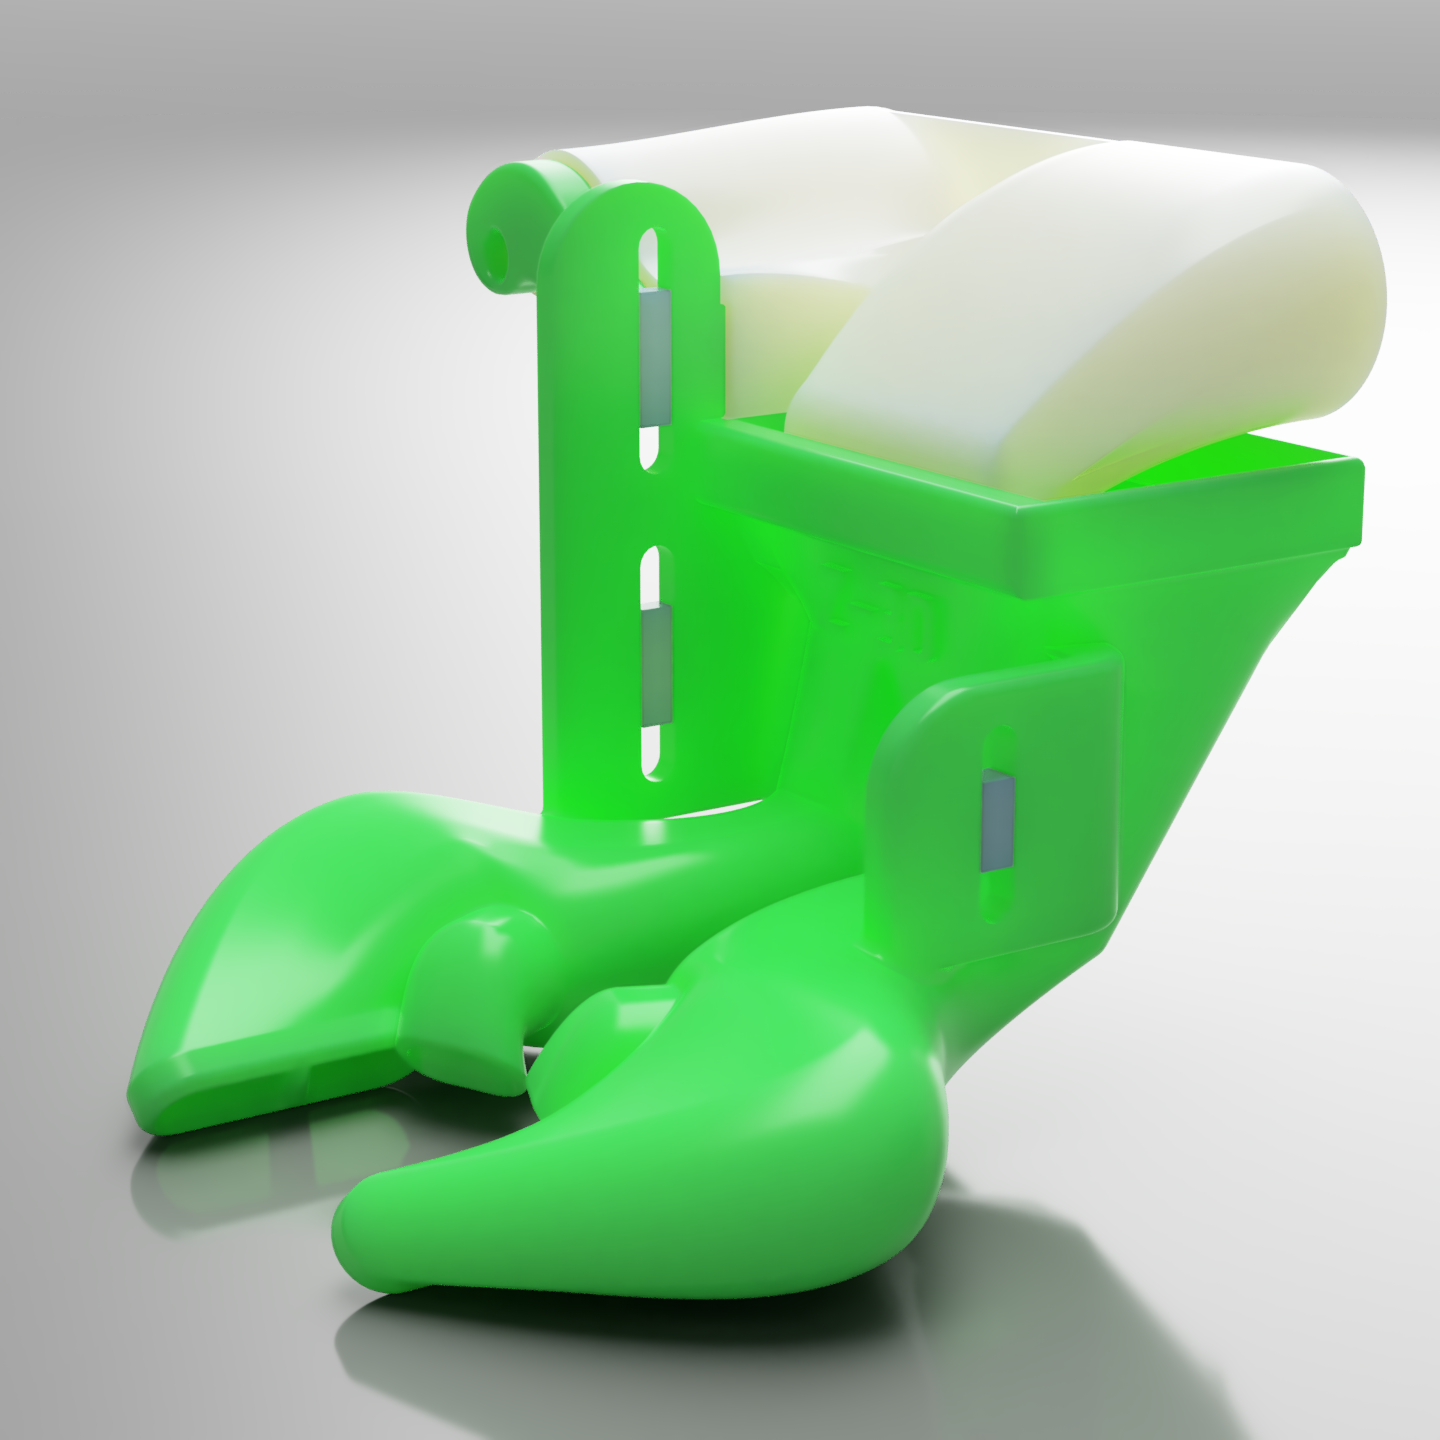  Starter Pack Outils - Imprimante 3D Filament